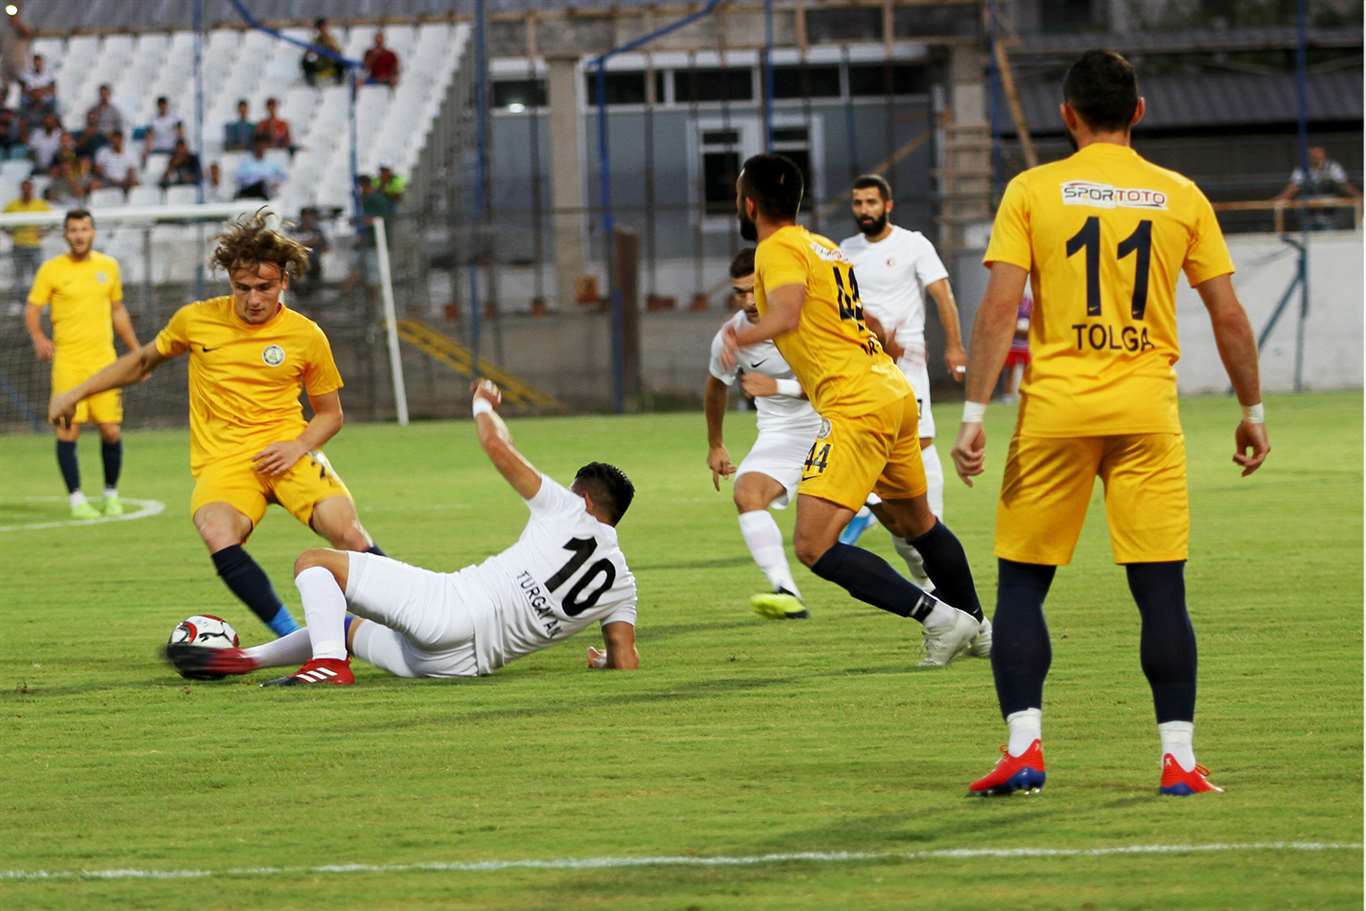    Fethiyespor evinde Ağrı'yı 3-1'le geçti haberi